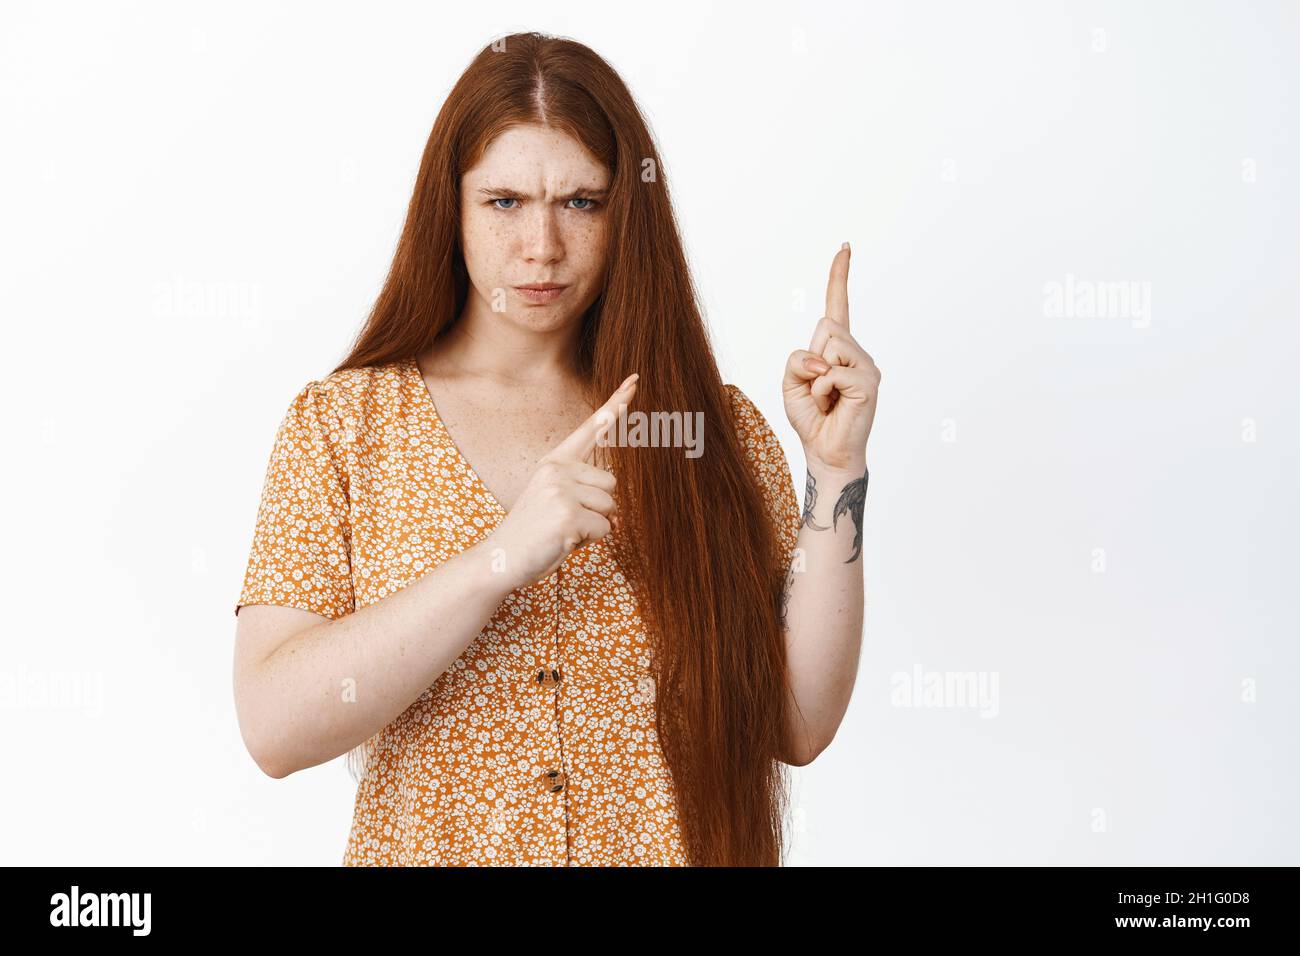 Immagine di giovane ragazza redhead arrabbiata che punta in alto a destra angolo, sembra dispiaciuto e deluso, lamentarsi o condannare cattivo, bianco Foto Stock